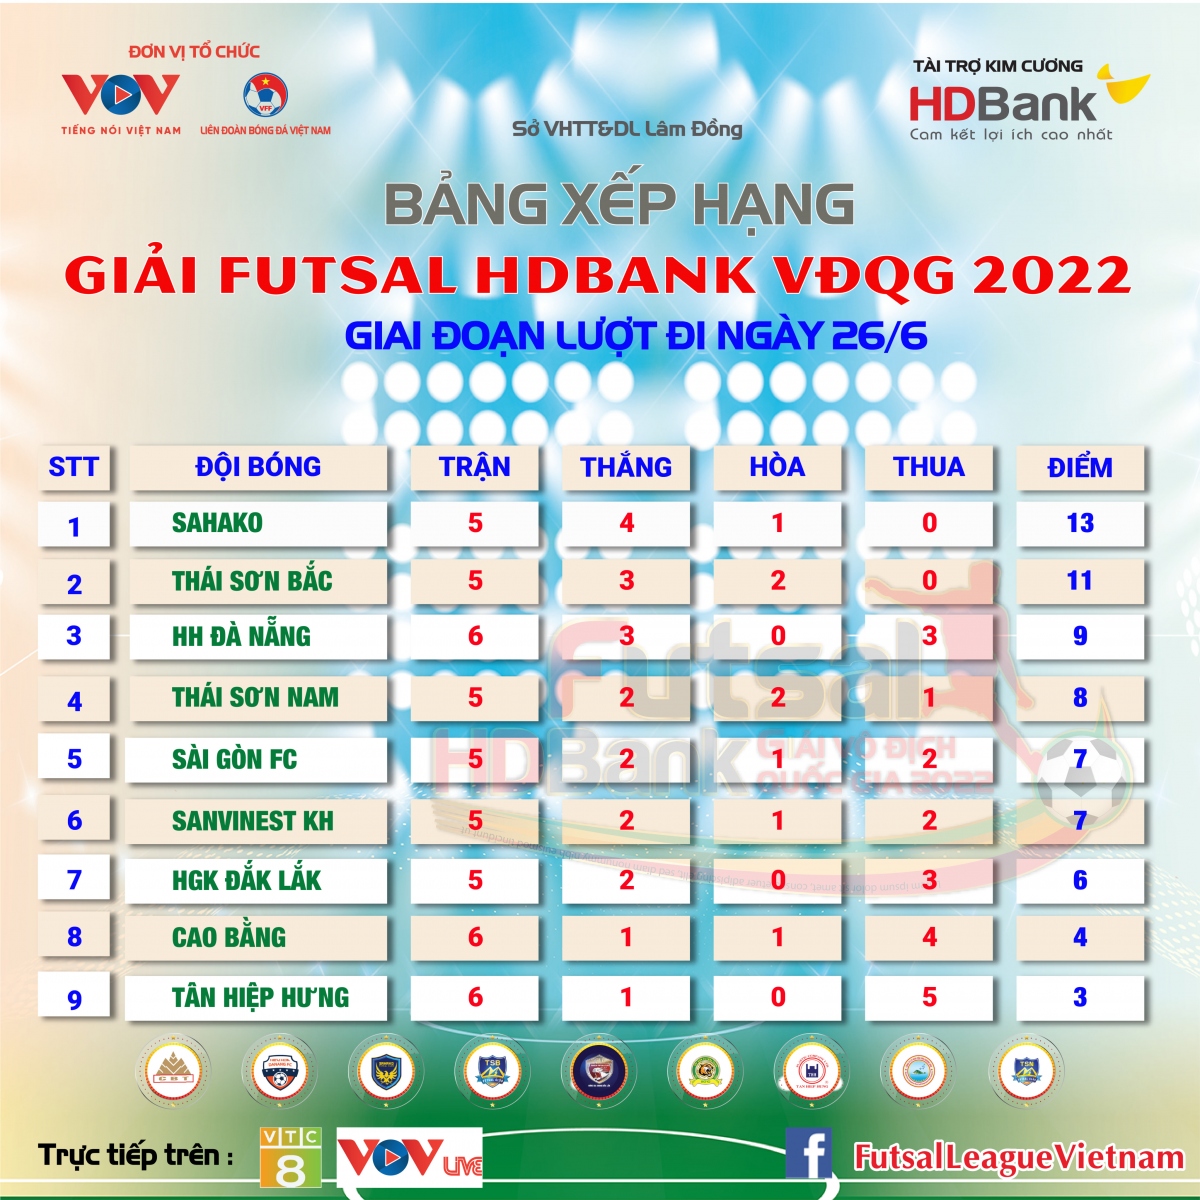 Bảng xếp hạng Futsal HDBank VĐQG 2022 mới nhất: Thái Sơn Nam vào tốp 4